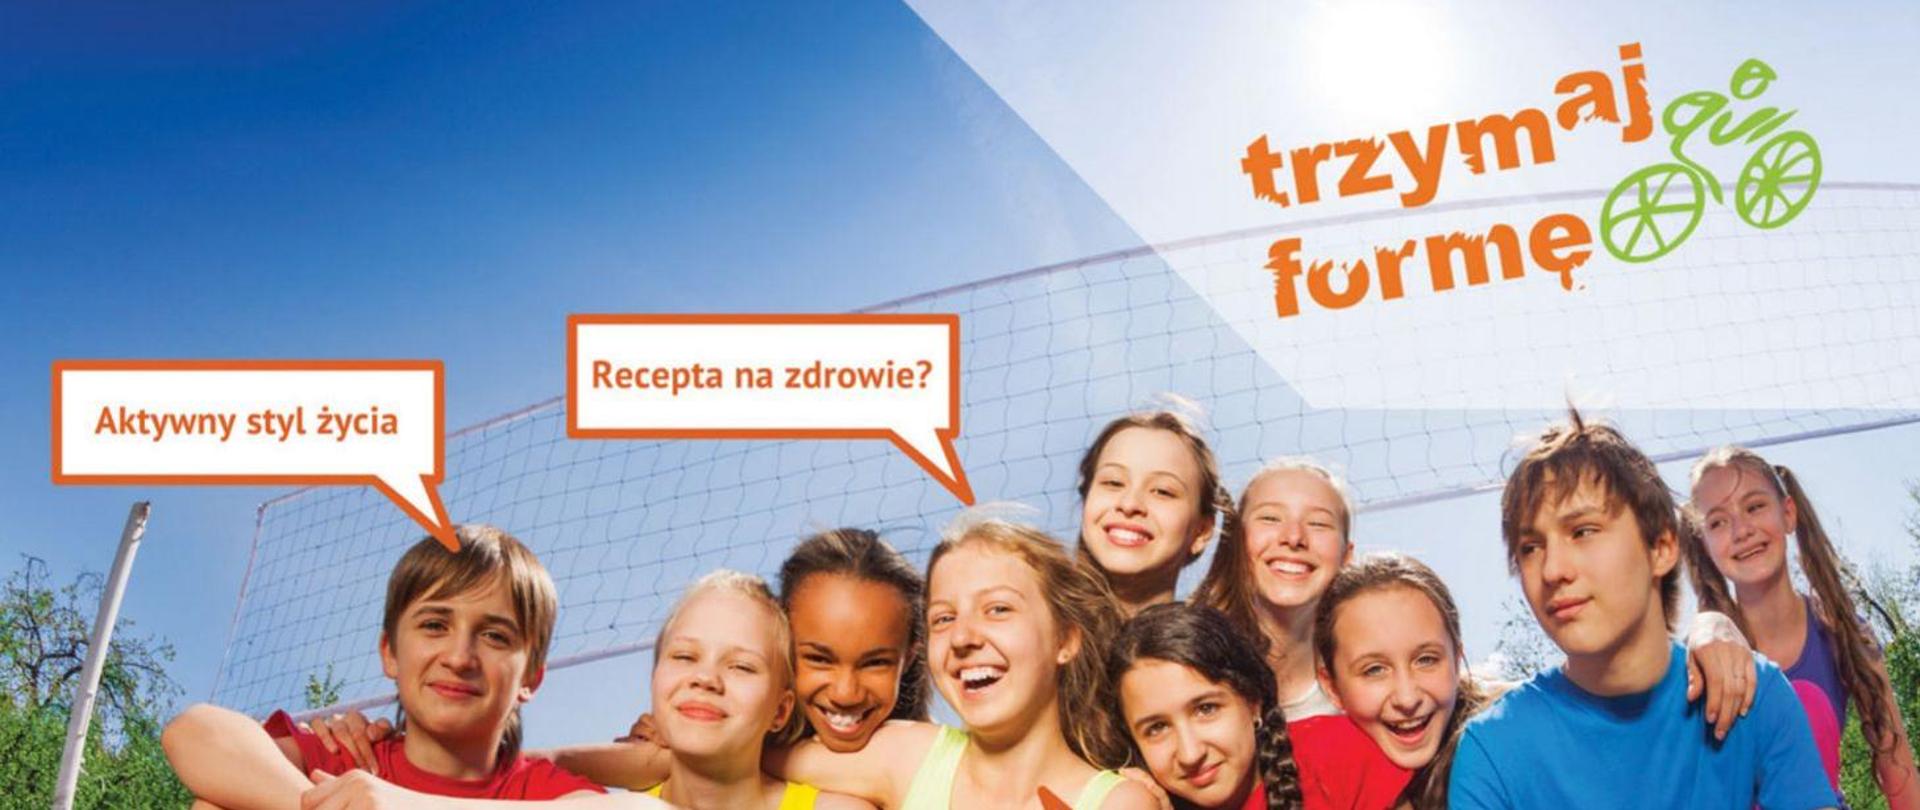 Uśmiechnięta grupa dzieci, nad nimi logo konkursu Trzymaj Formę oraz napisy "Aktywny styl życia", "Recepta na zdrowie?" 